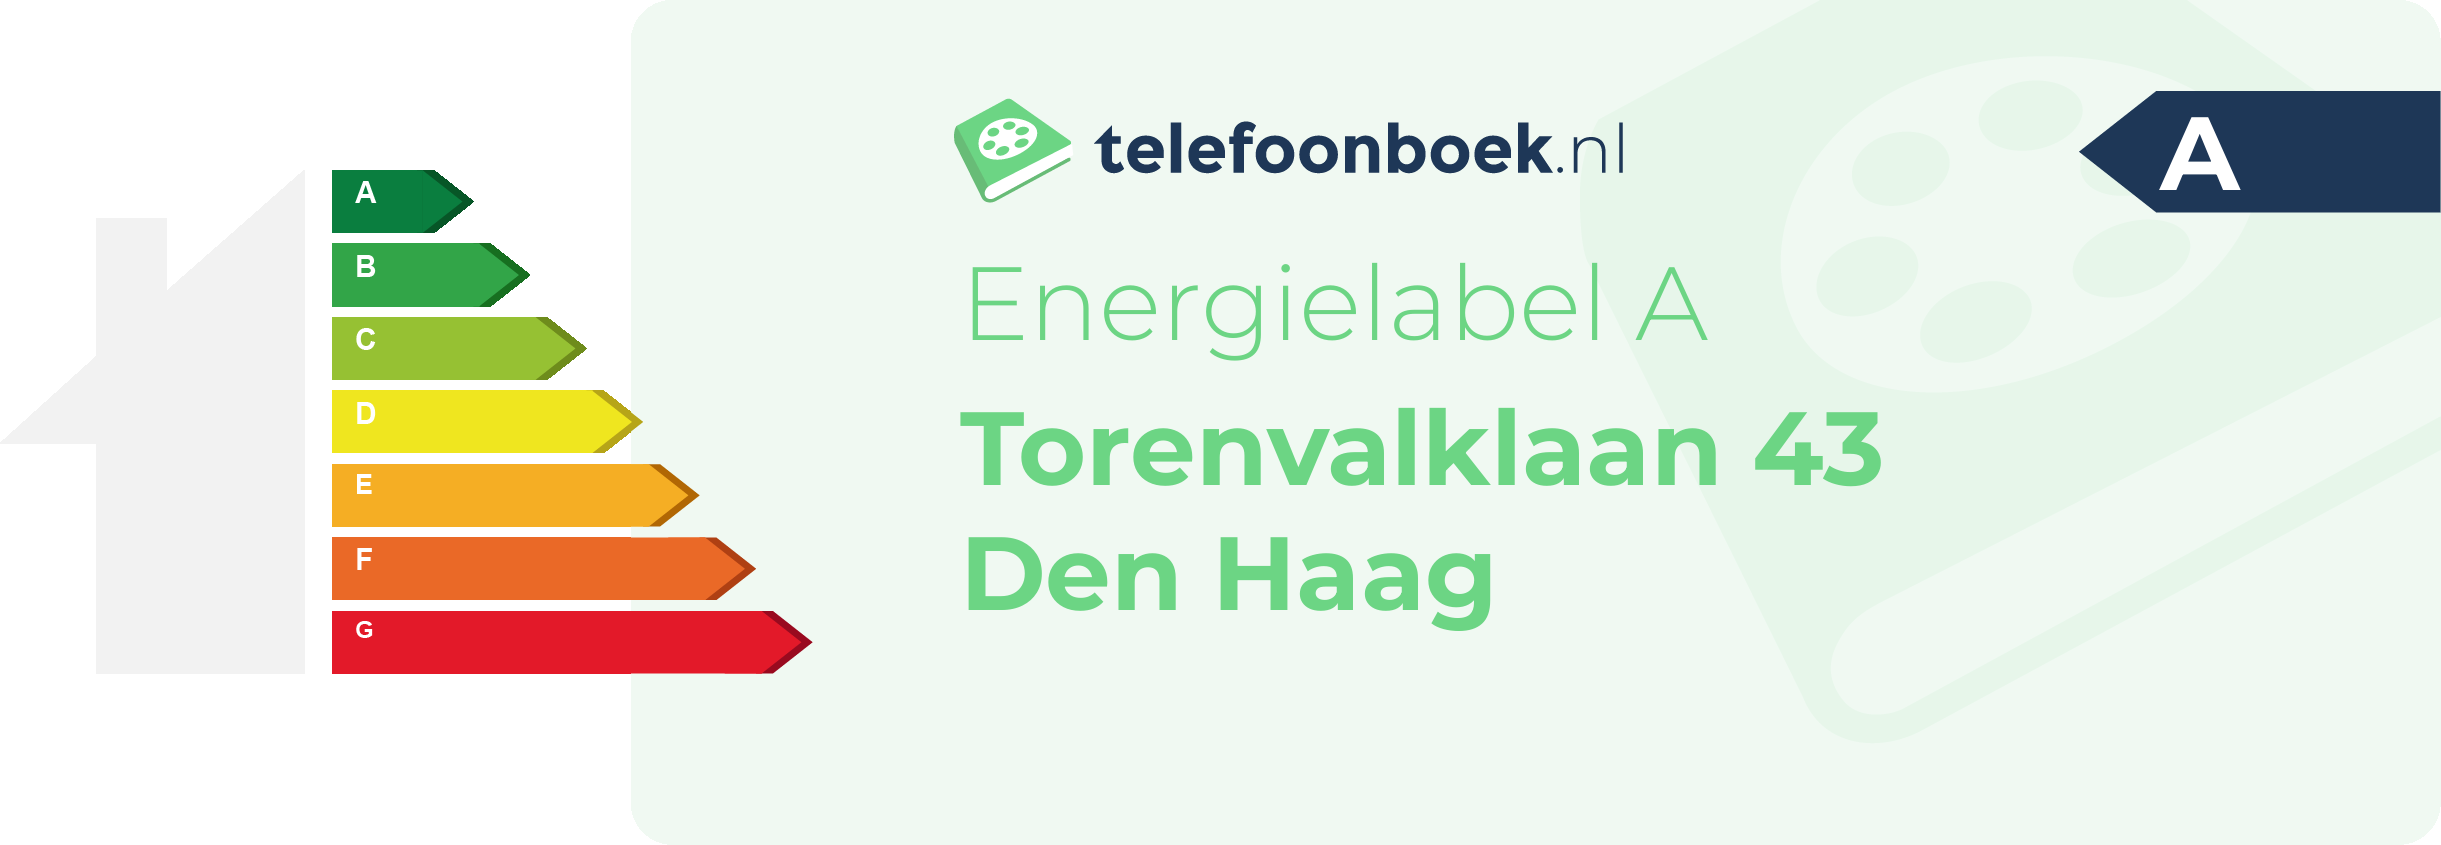 Energielabel Torenvalklaan 43 Den Haag